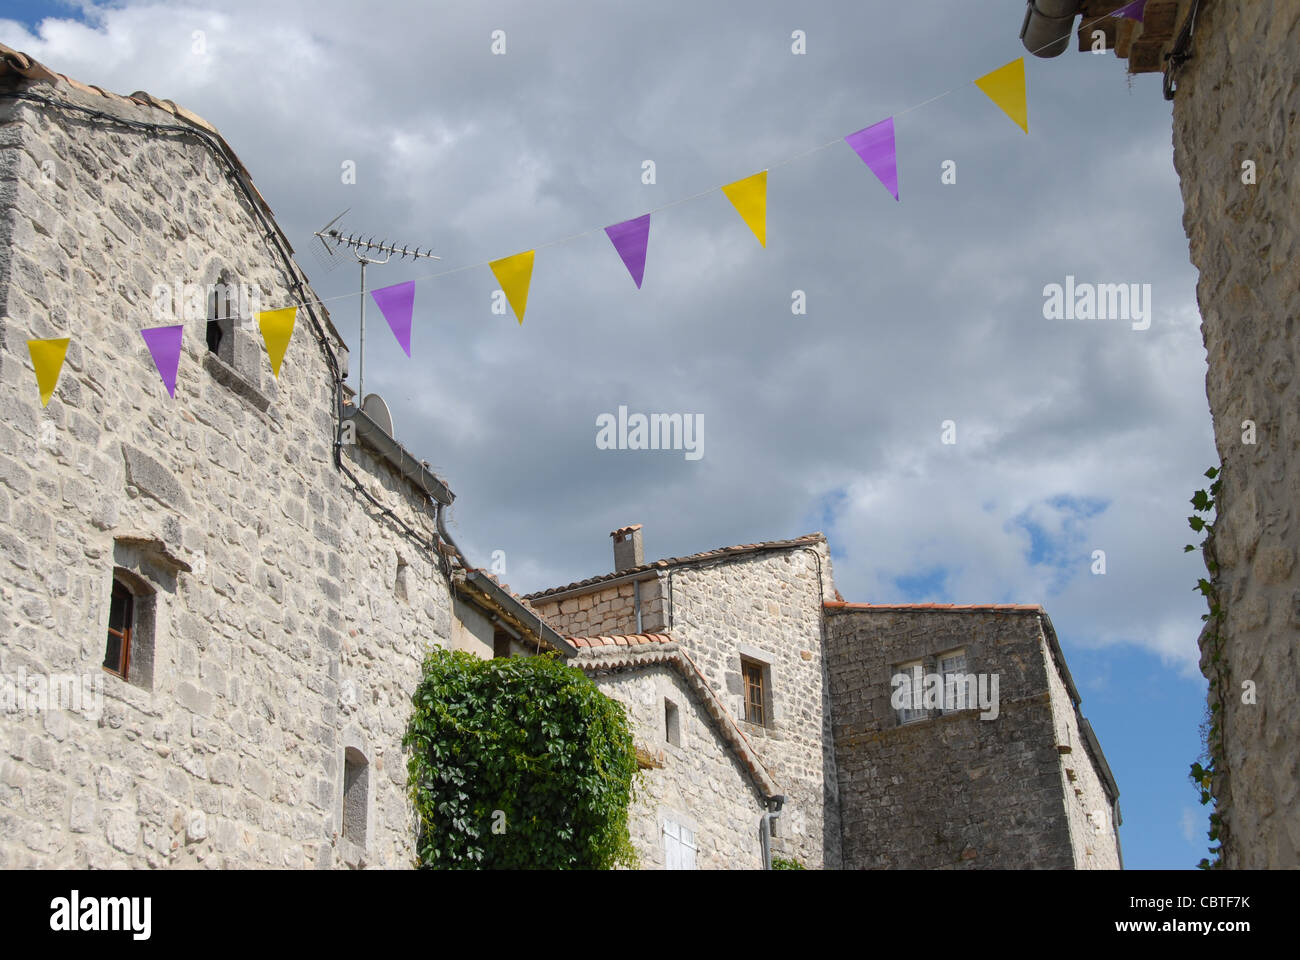 Traditionelle Häuser aus Stein Balazuc, Les Plus beaux villages de France", eines der schönsten Dörfer, Ardèche Stockfoto